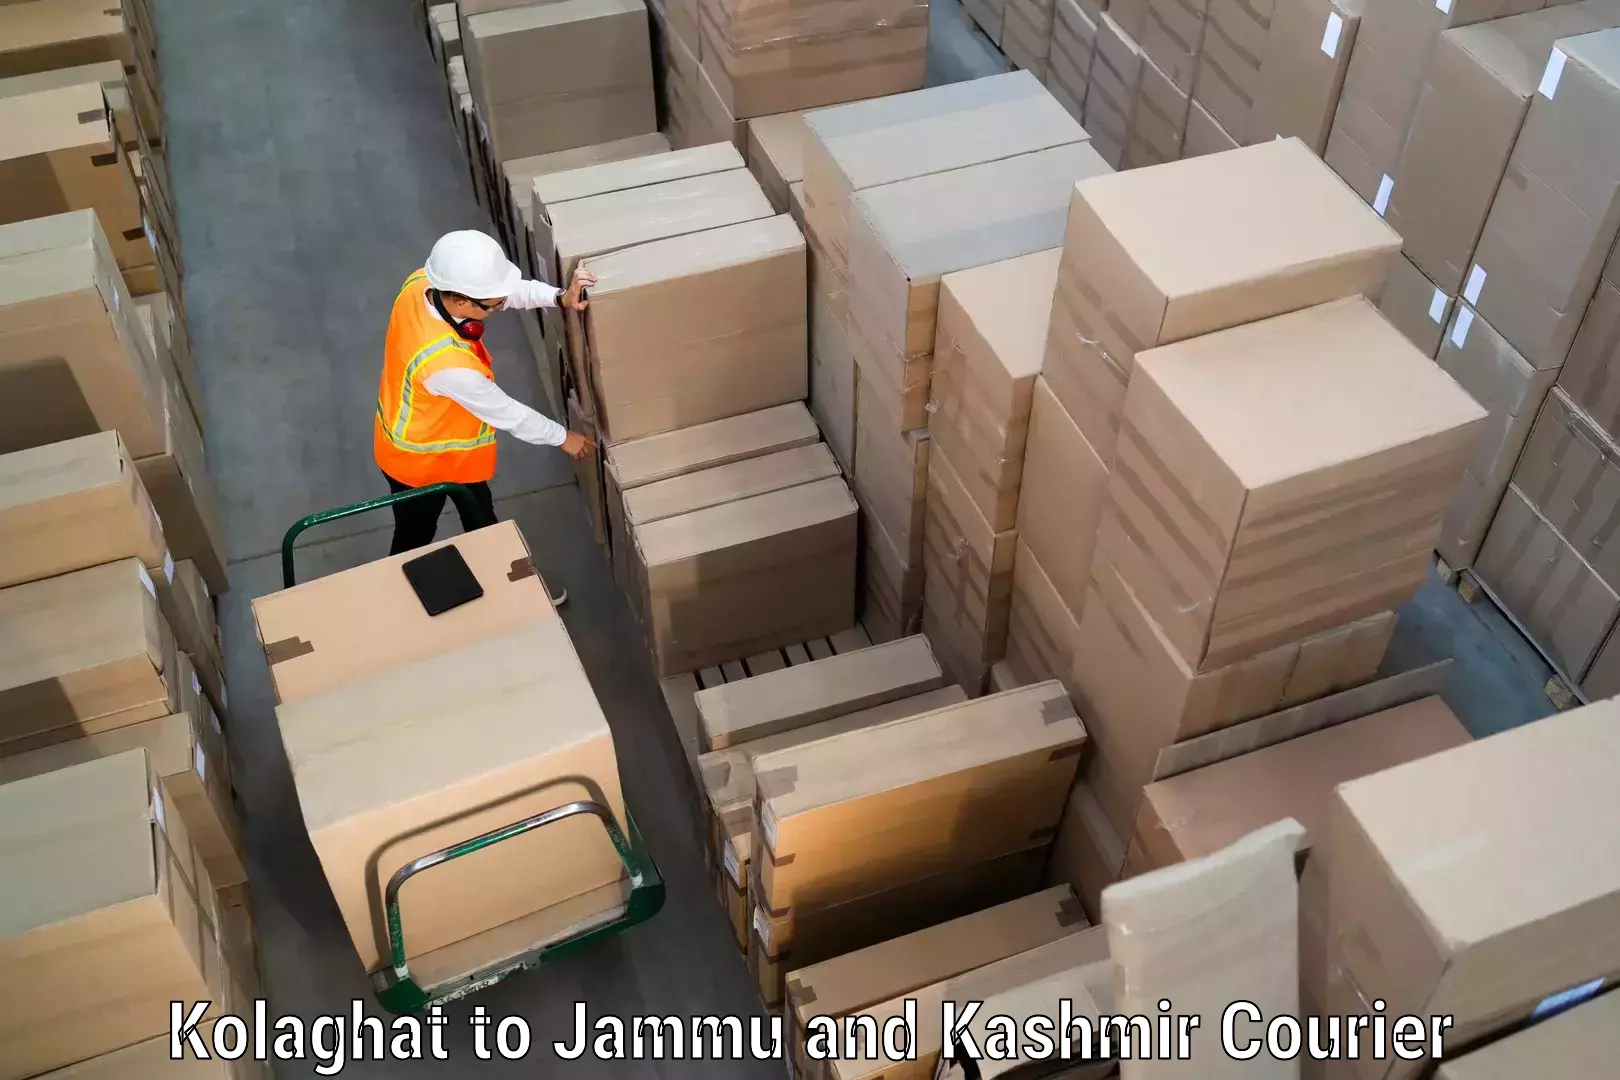 Efficient cargo handling Kolaghat to Anantnag